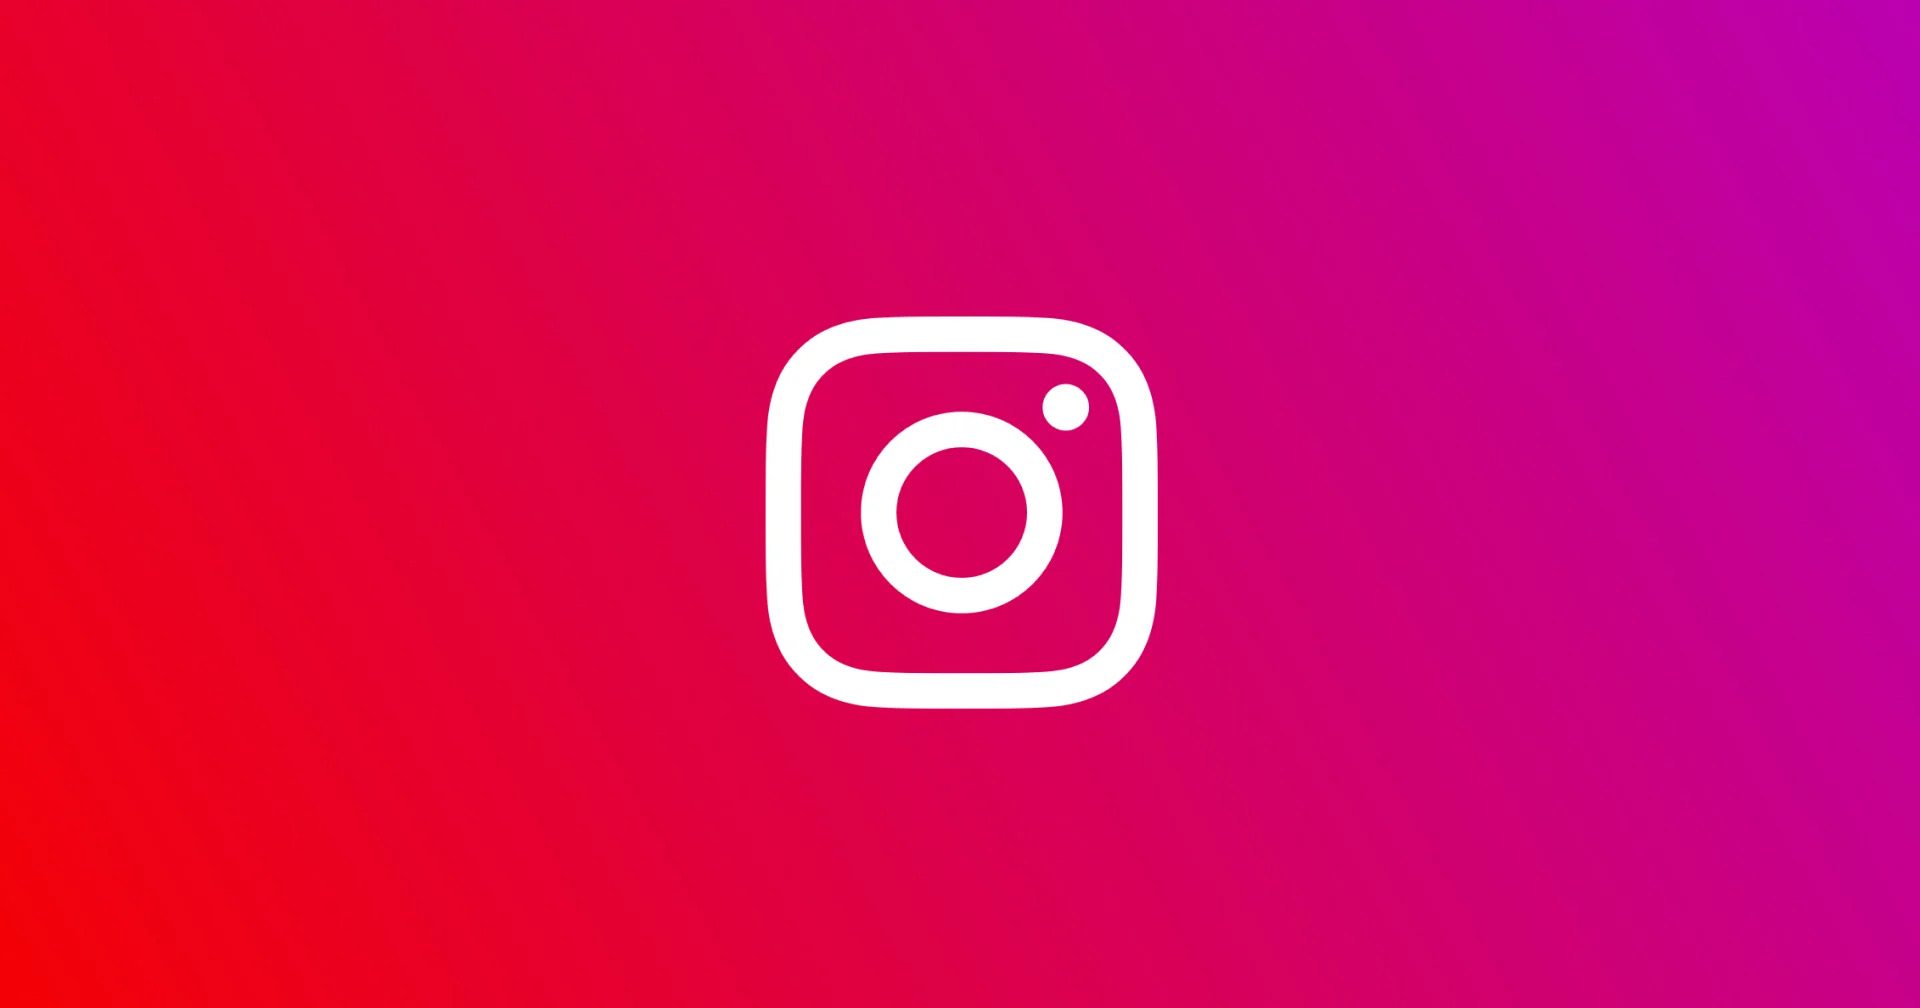 หัวหน้า Instagram ออกชี้แจง “การเปลี่ยนแปลงที่เห็น เป็นการทดสอบเฉย ๆ” แต่มุ่งเน้นวิดีโอแน่นอน!